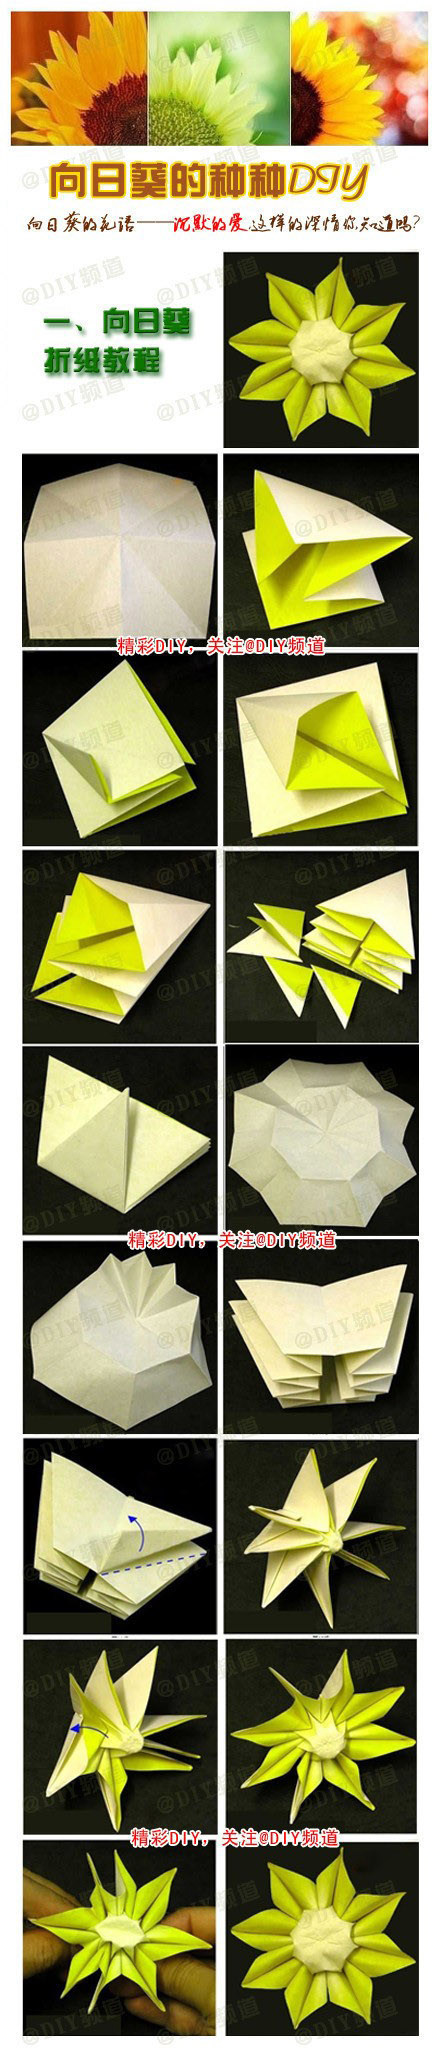 向日葵折纸教程 步骤图片